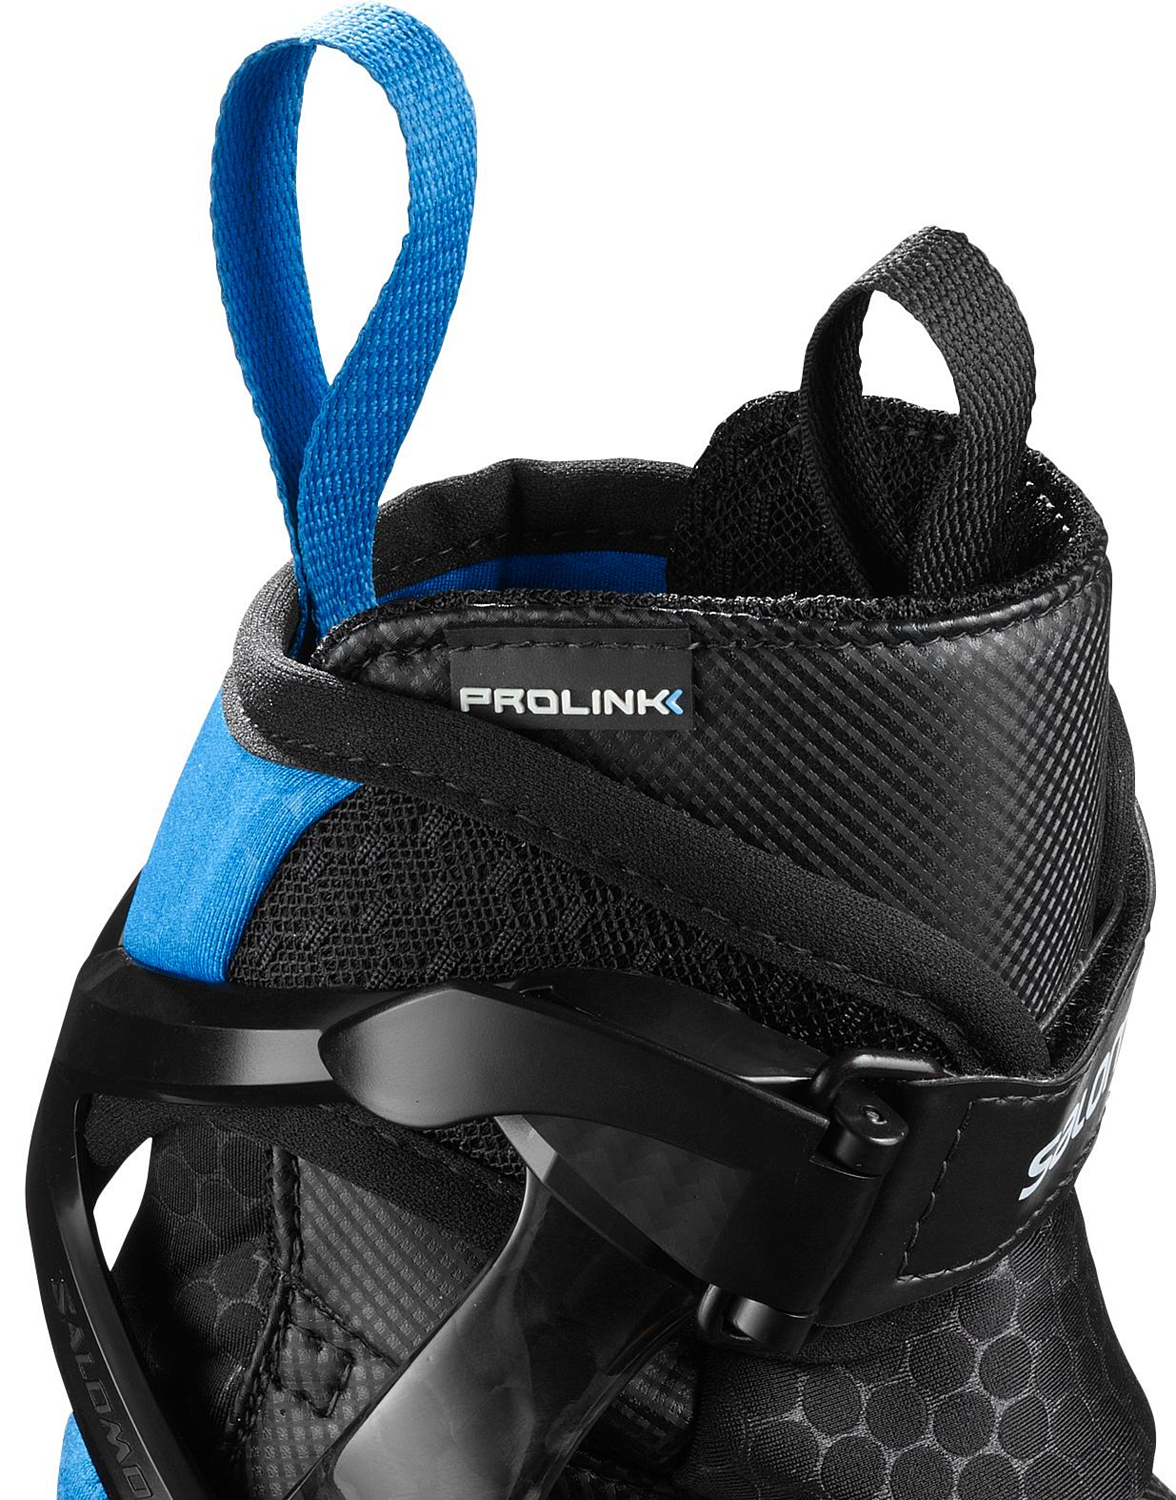 Лыжные ботинки SALOMON 2019-20 S/race sk pro Prolink